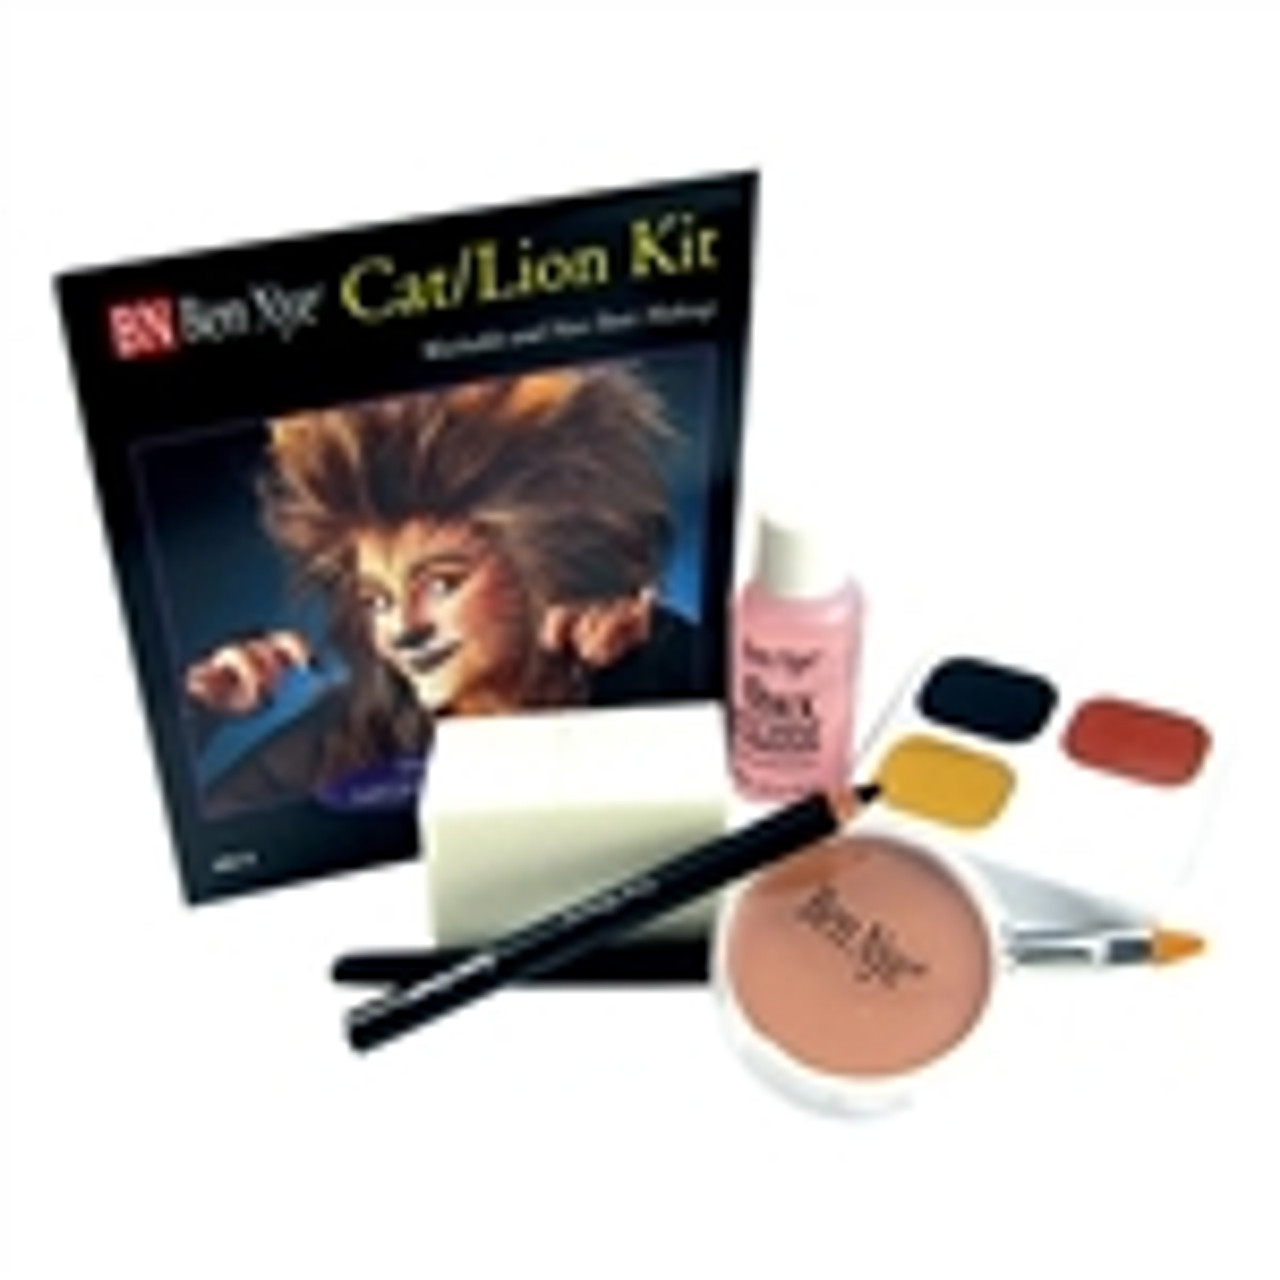 Ben Nye Cat/Lion Kit